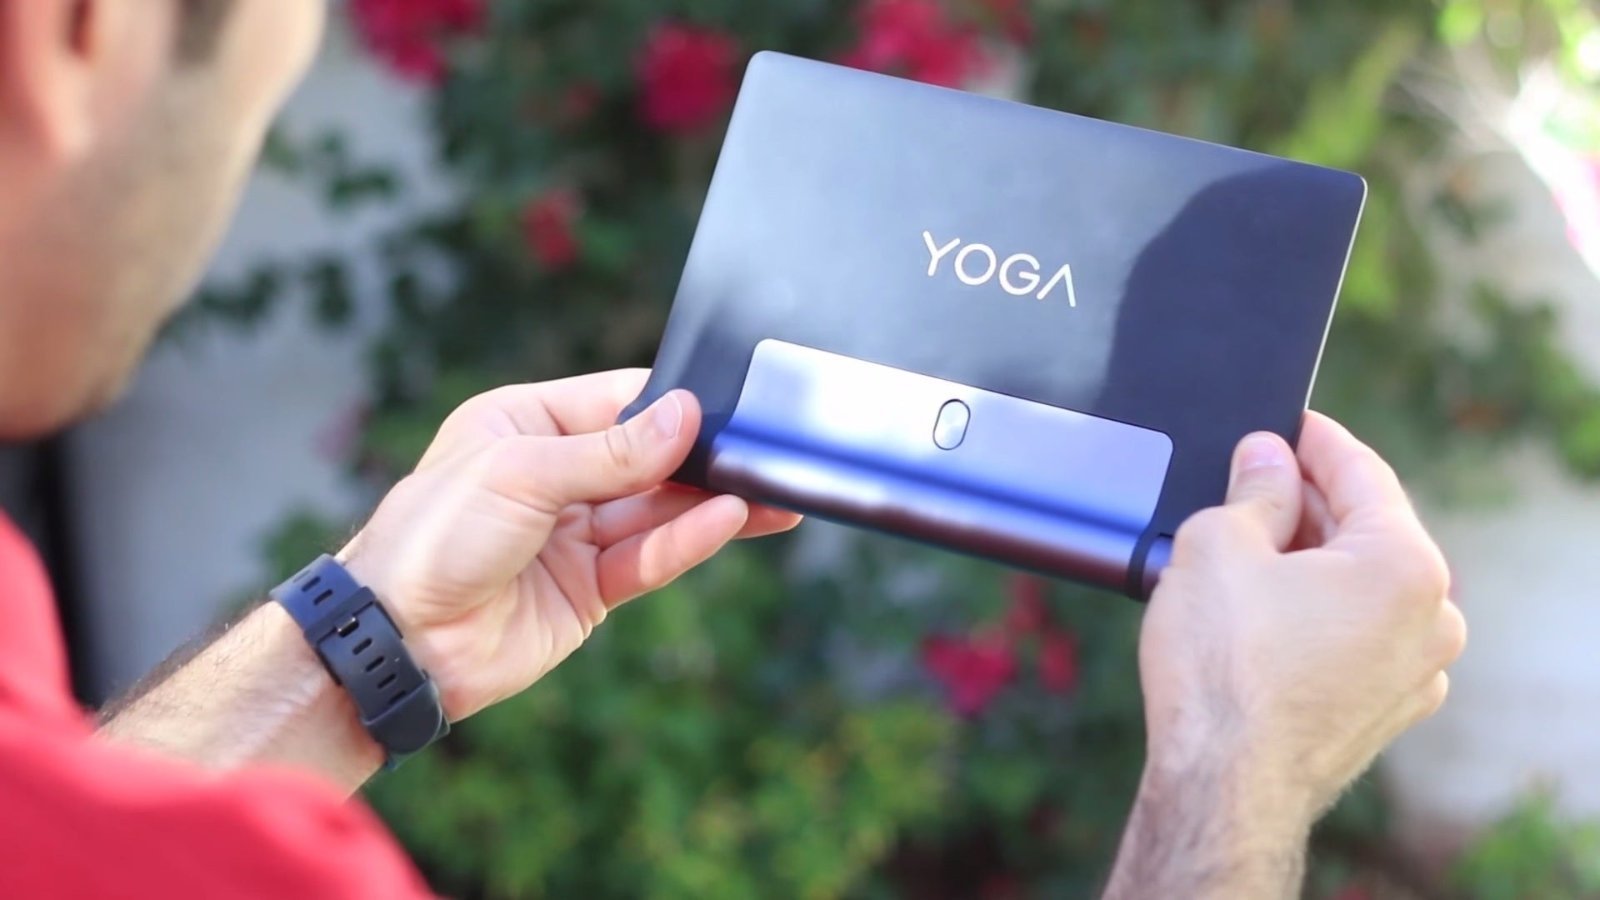 Lenovo Yoga Tab 3 8"